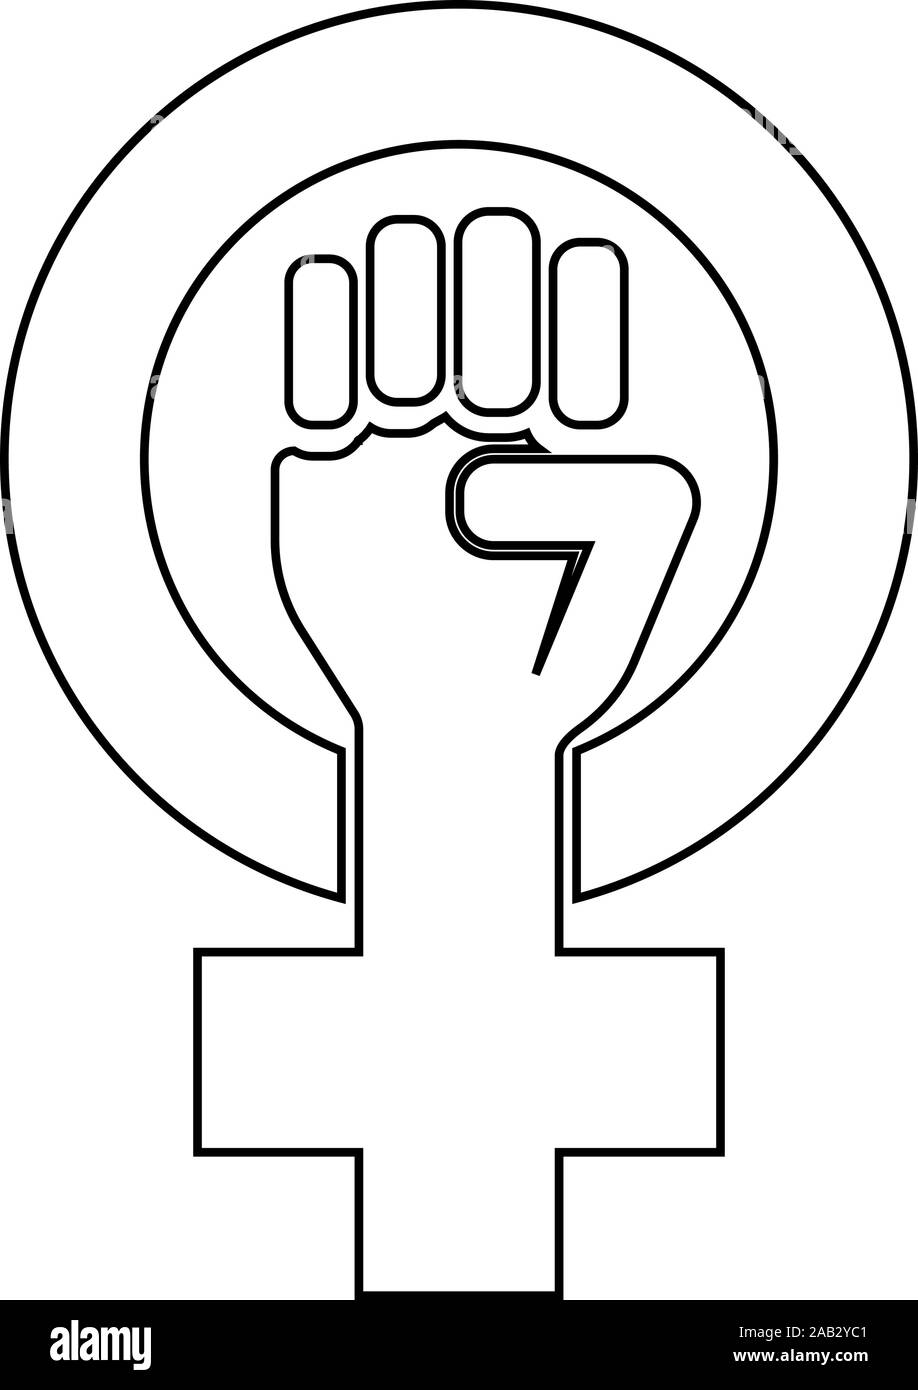 Symbol des Feminismus Bewegung Geschlecht Frauen widerstehen Faust Hand in Umlauf und Kreuz Symbol outline Schwarz Vector Illustration Flat Style simple Image Stock Vektor